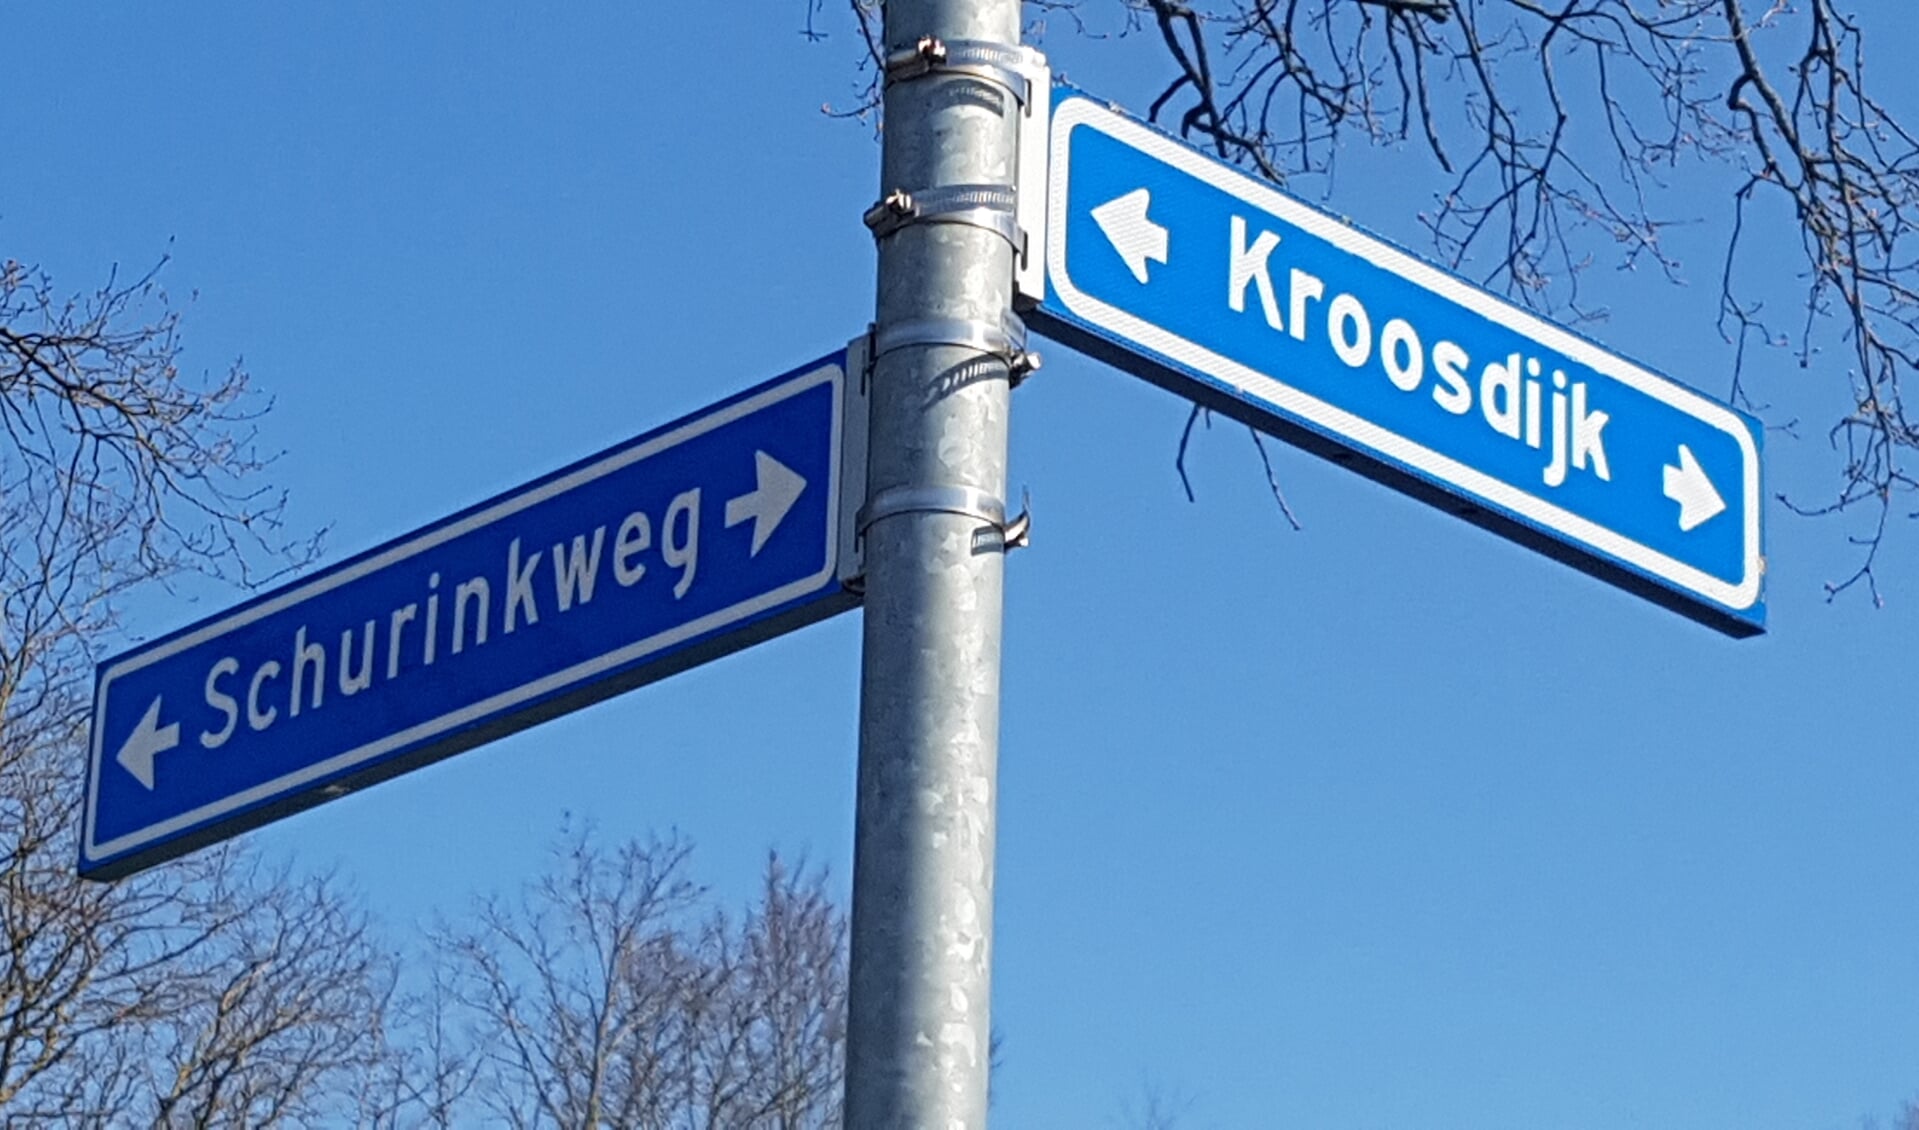 Goed nieuws voor de omwonenden van de Schurinkweg en de Kroosdijk.